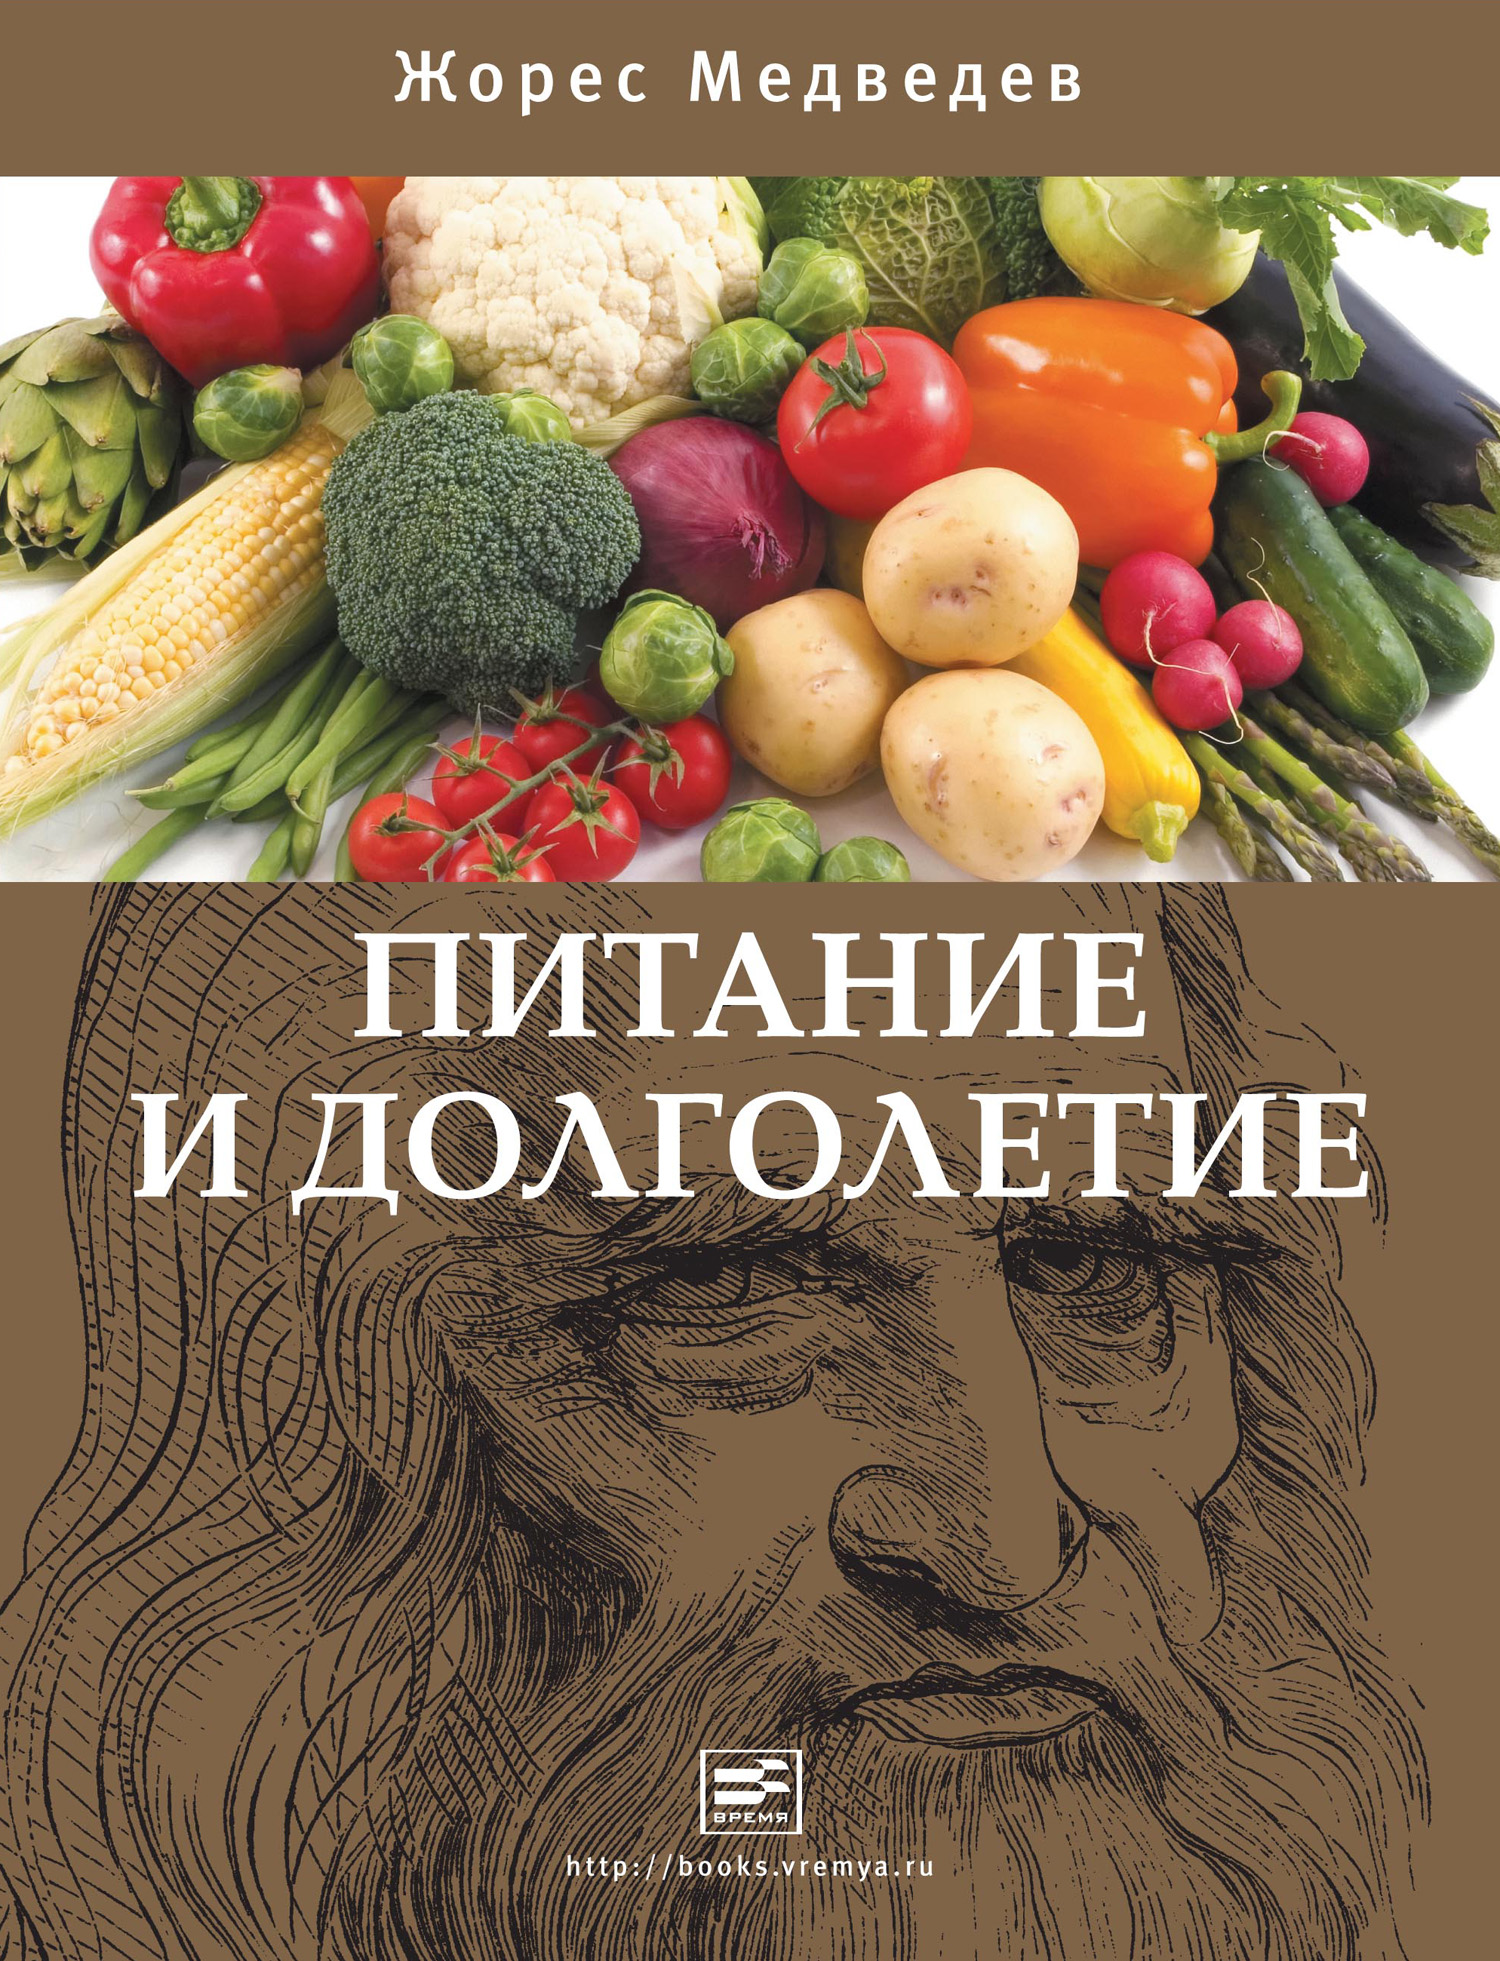 Книга Питание и долголетие из серии , созданная Жорес Медведев, может относится к жанру Медицина, Здоровье. Стоимость книги Питание и долголетие  с идентификатором 2860425 составляет 199.00 руб.